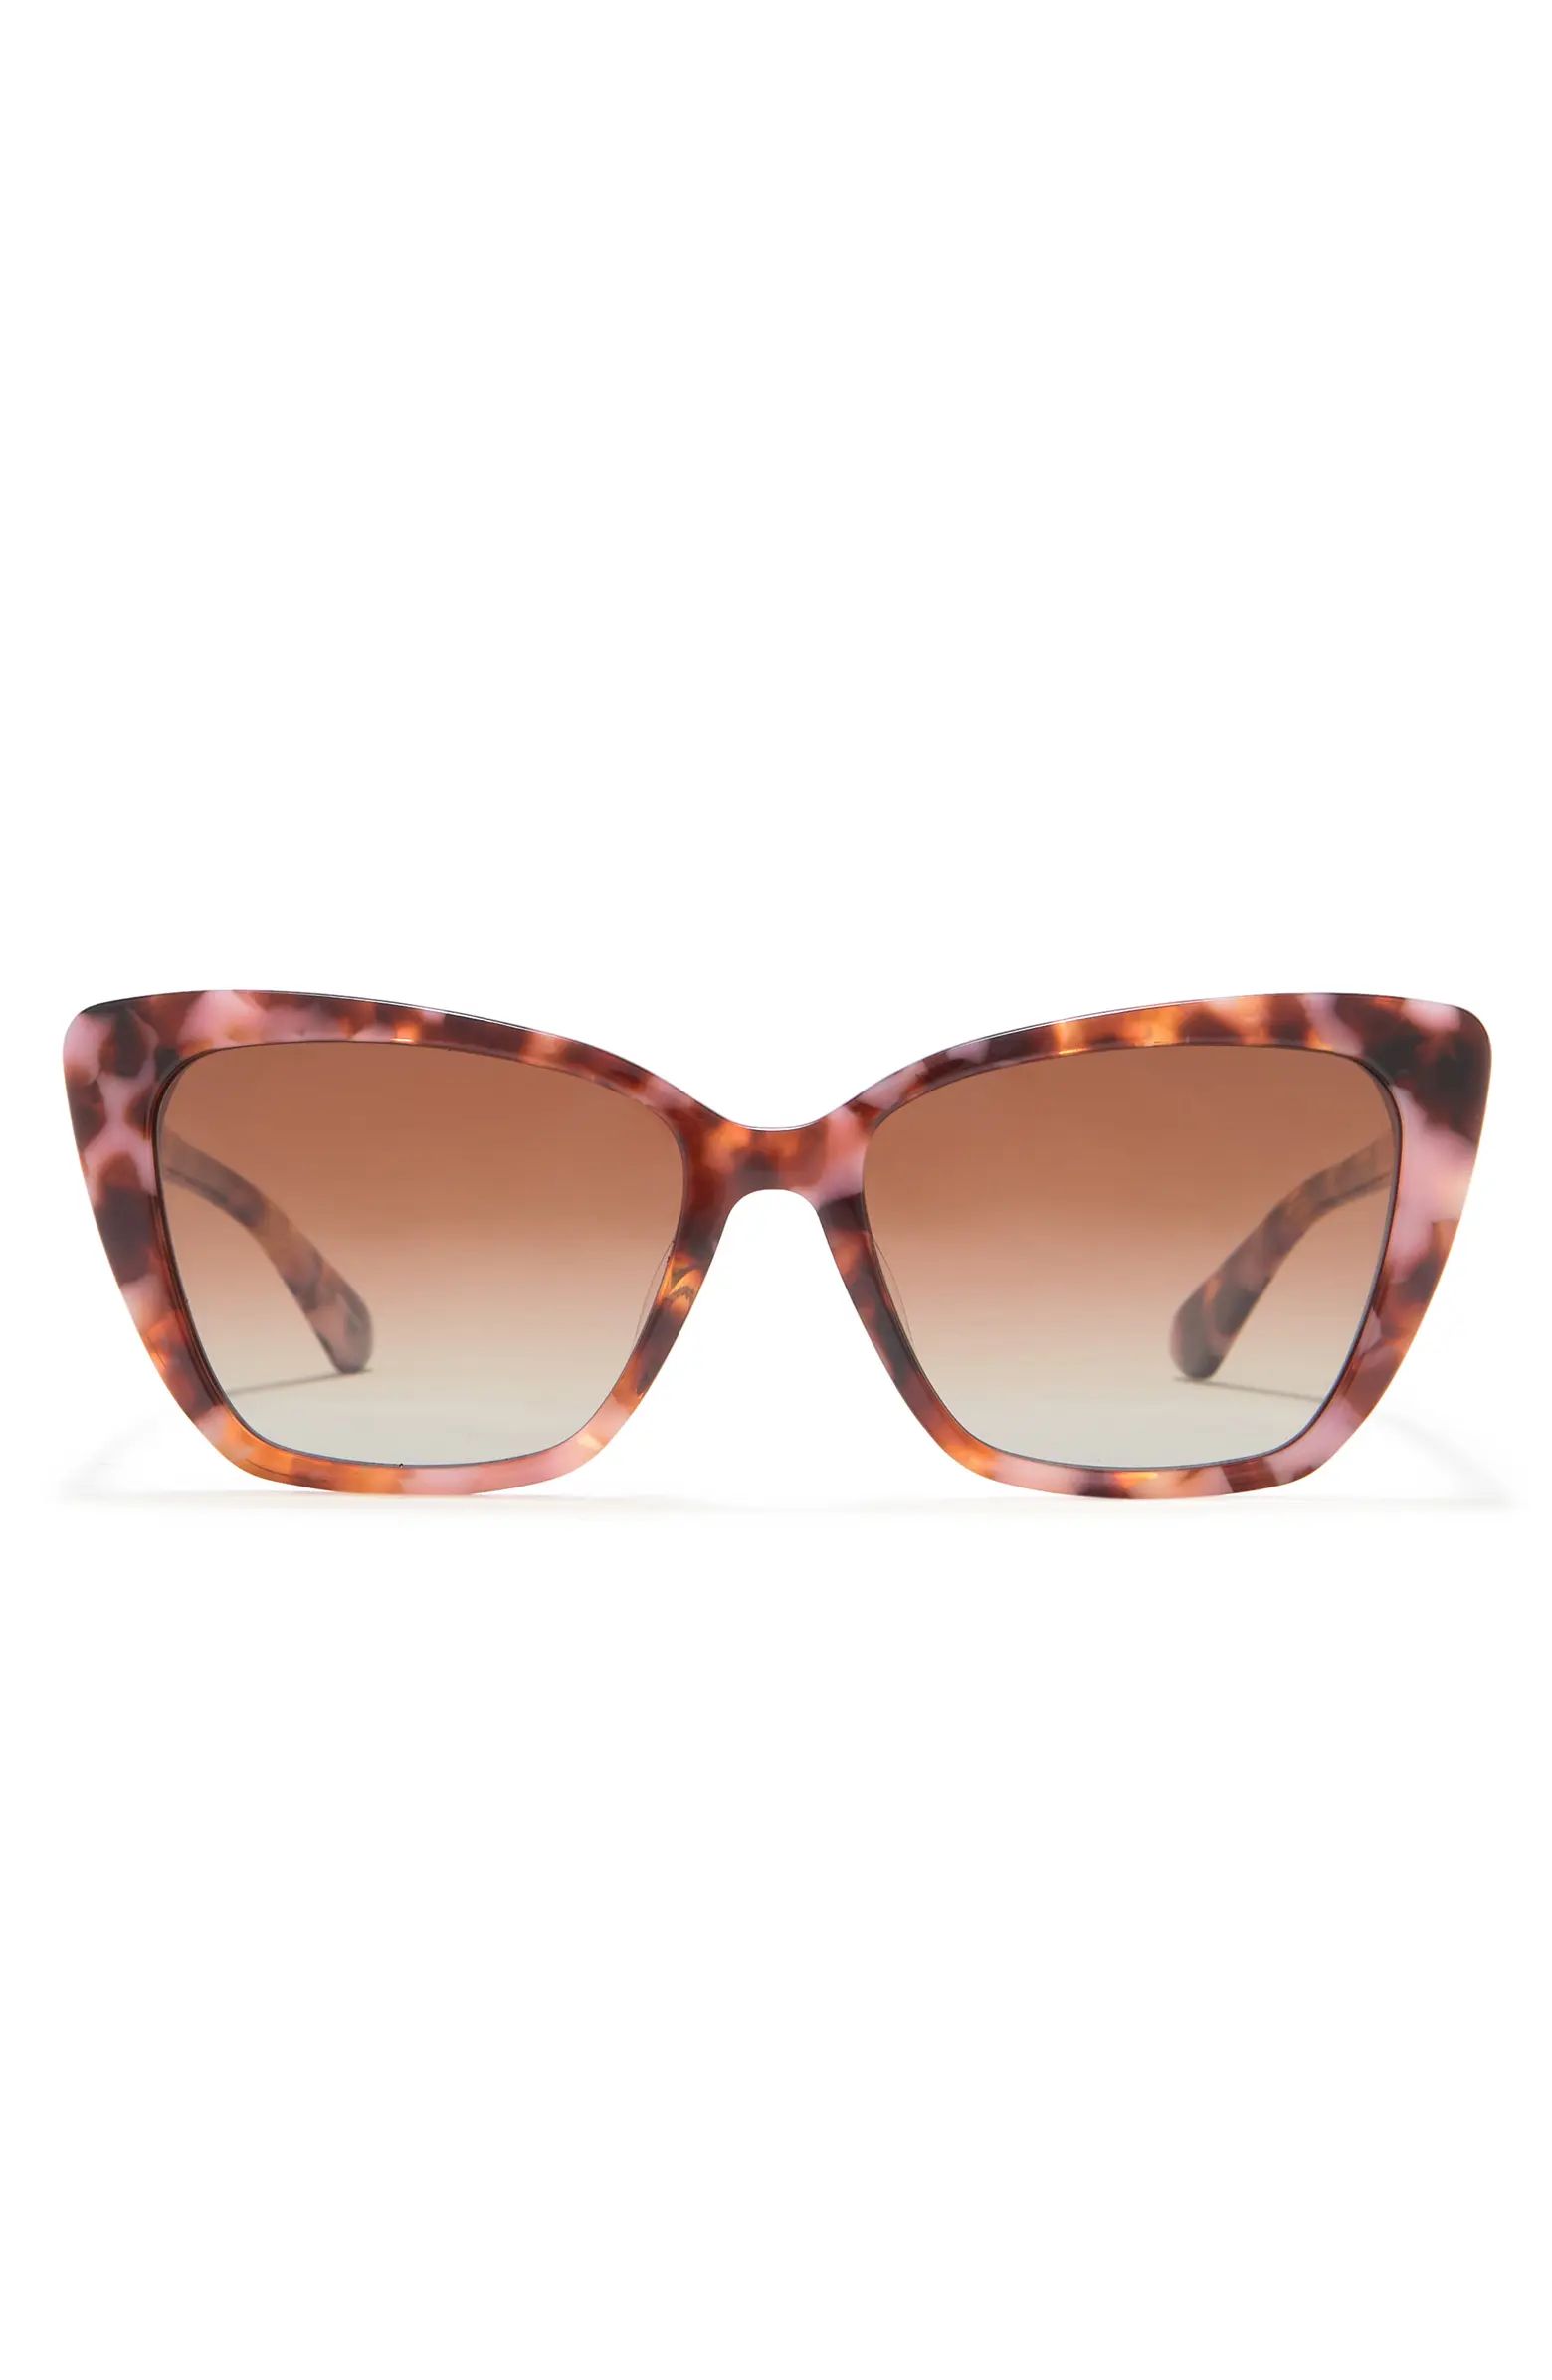 KATE SPADE NEW YORK lucca 55mm cat eye sunglasses | Nordstromrack | Nordstrom Rack